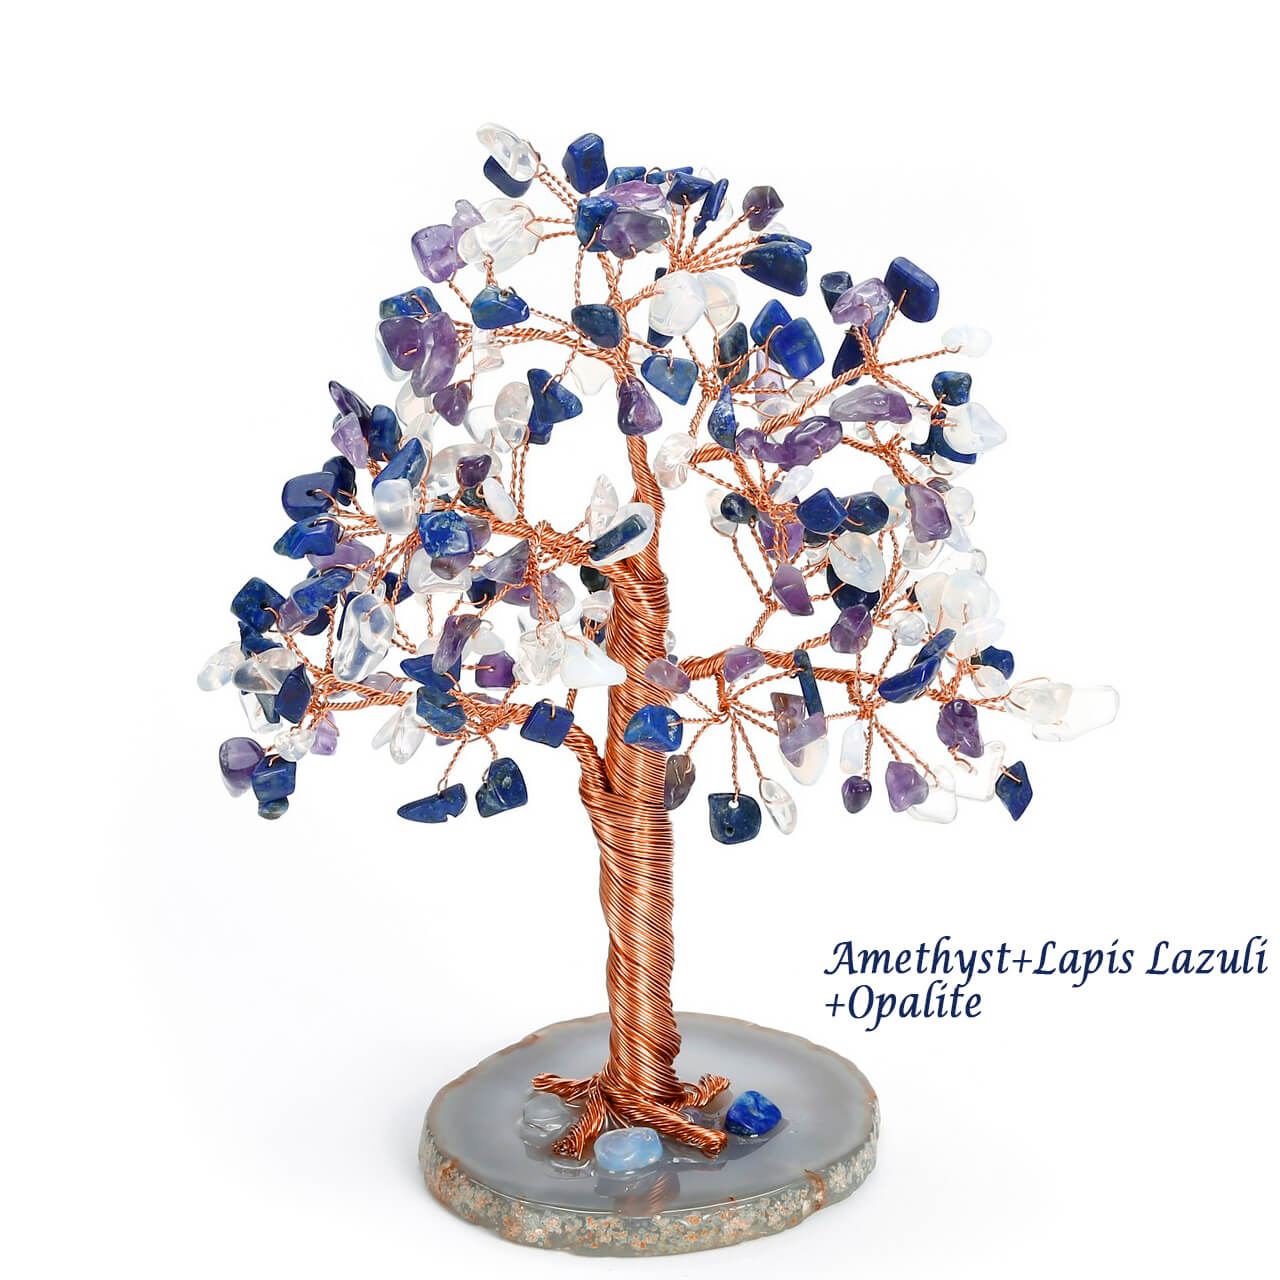 asd039504 jovivi lapis lazuli loose beads gemstones tree reiki healing money tree home decor